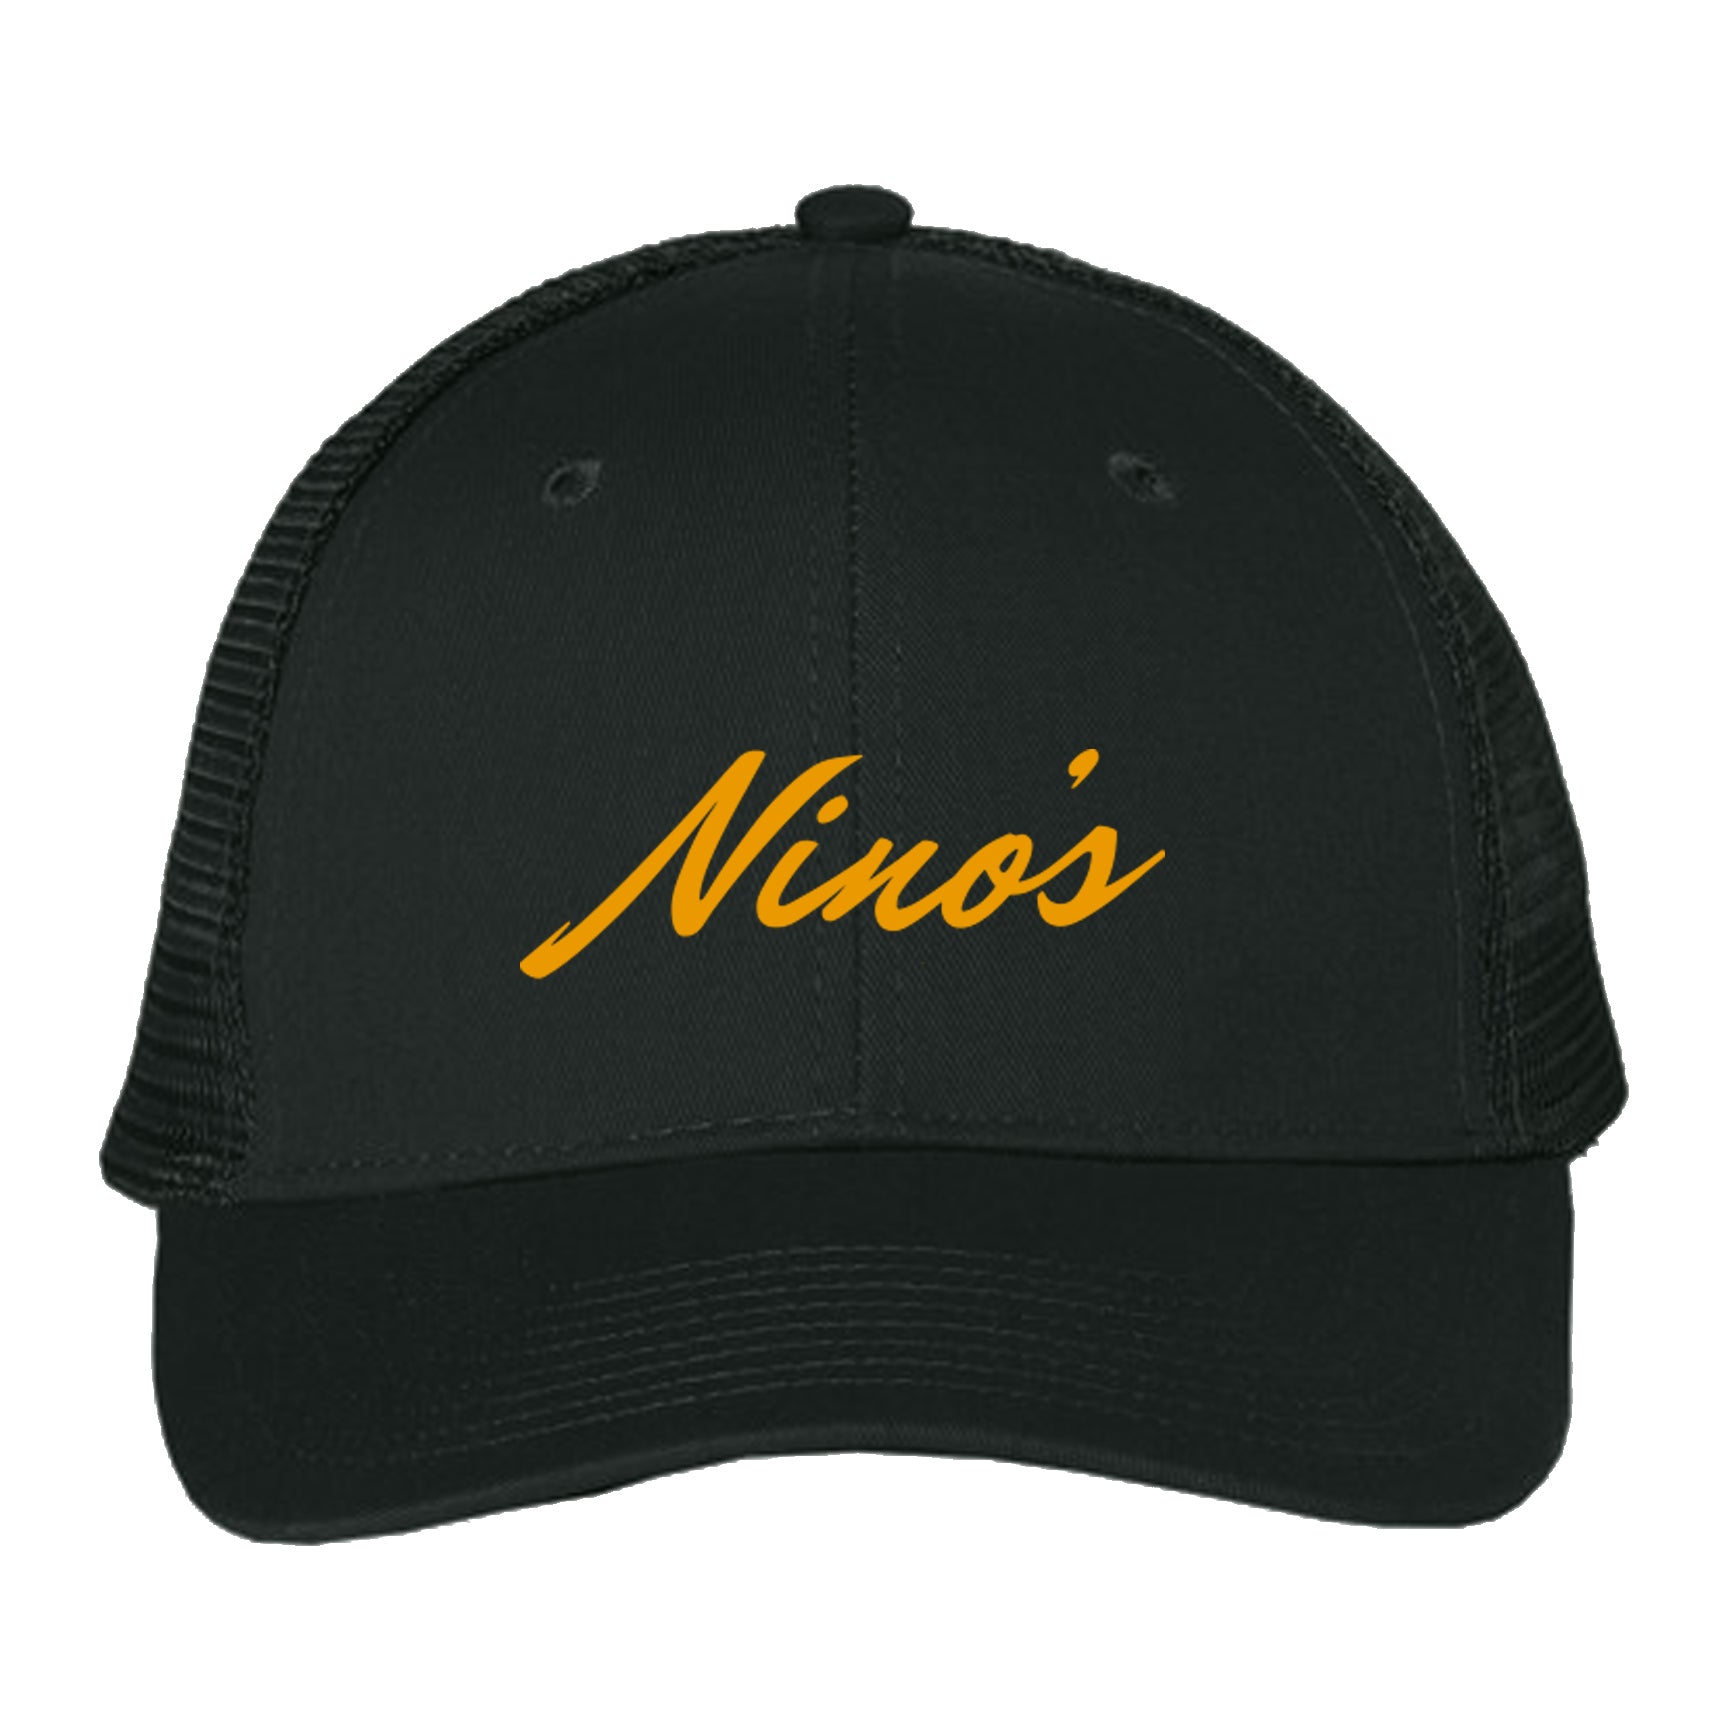 Nino's Black Mesh Back Cap